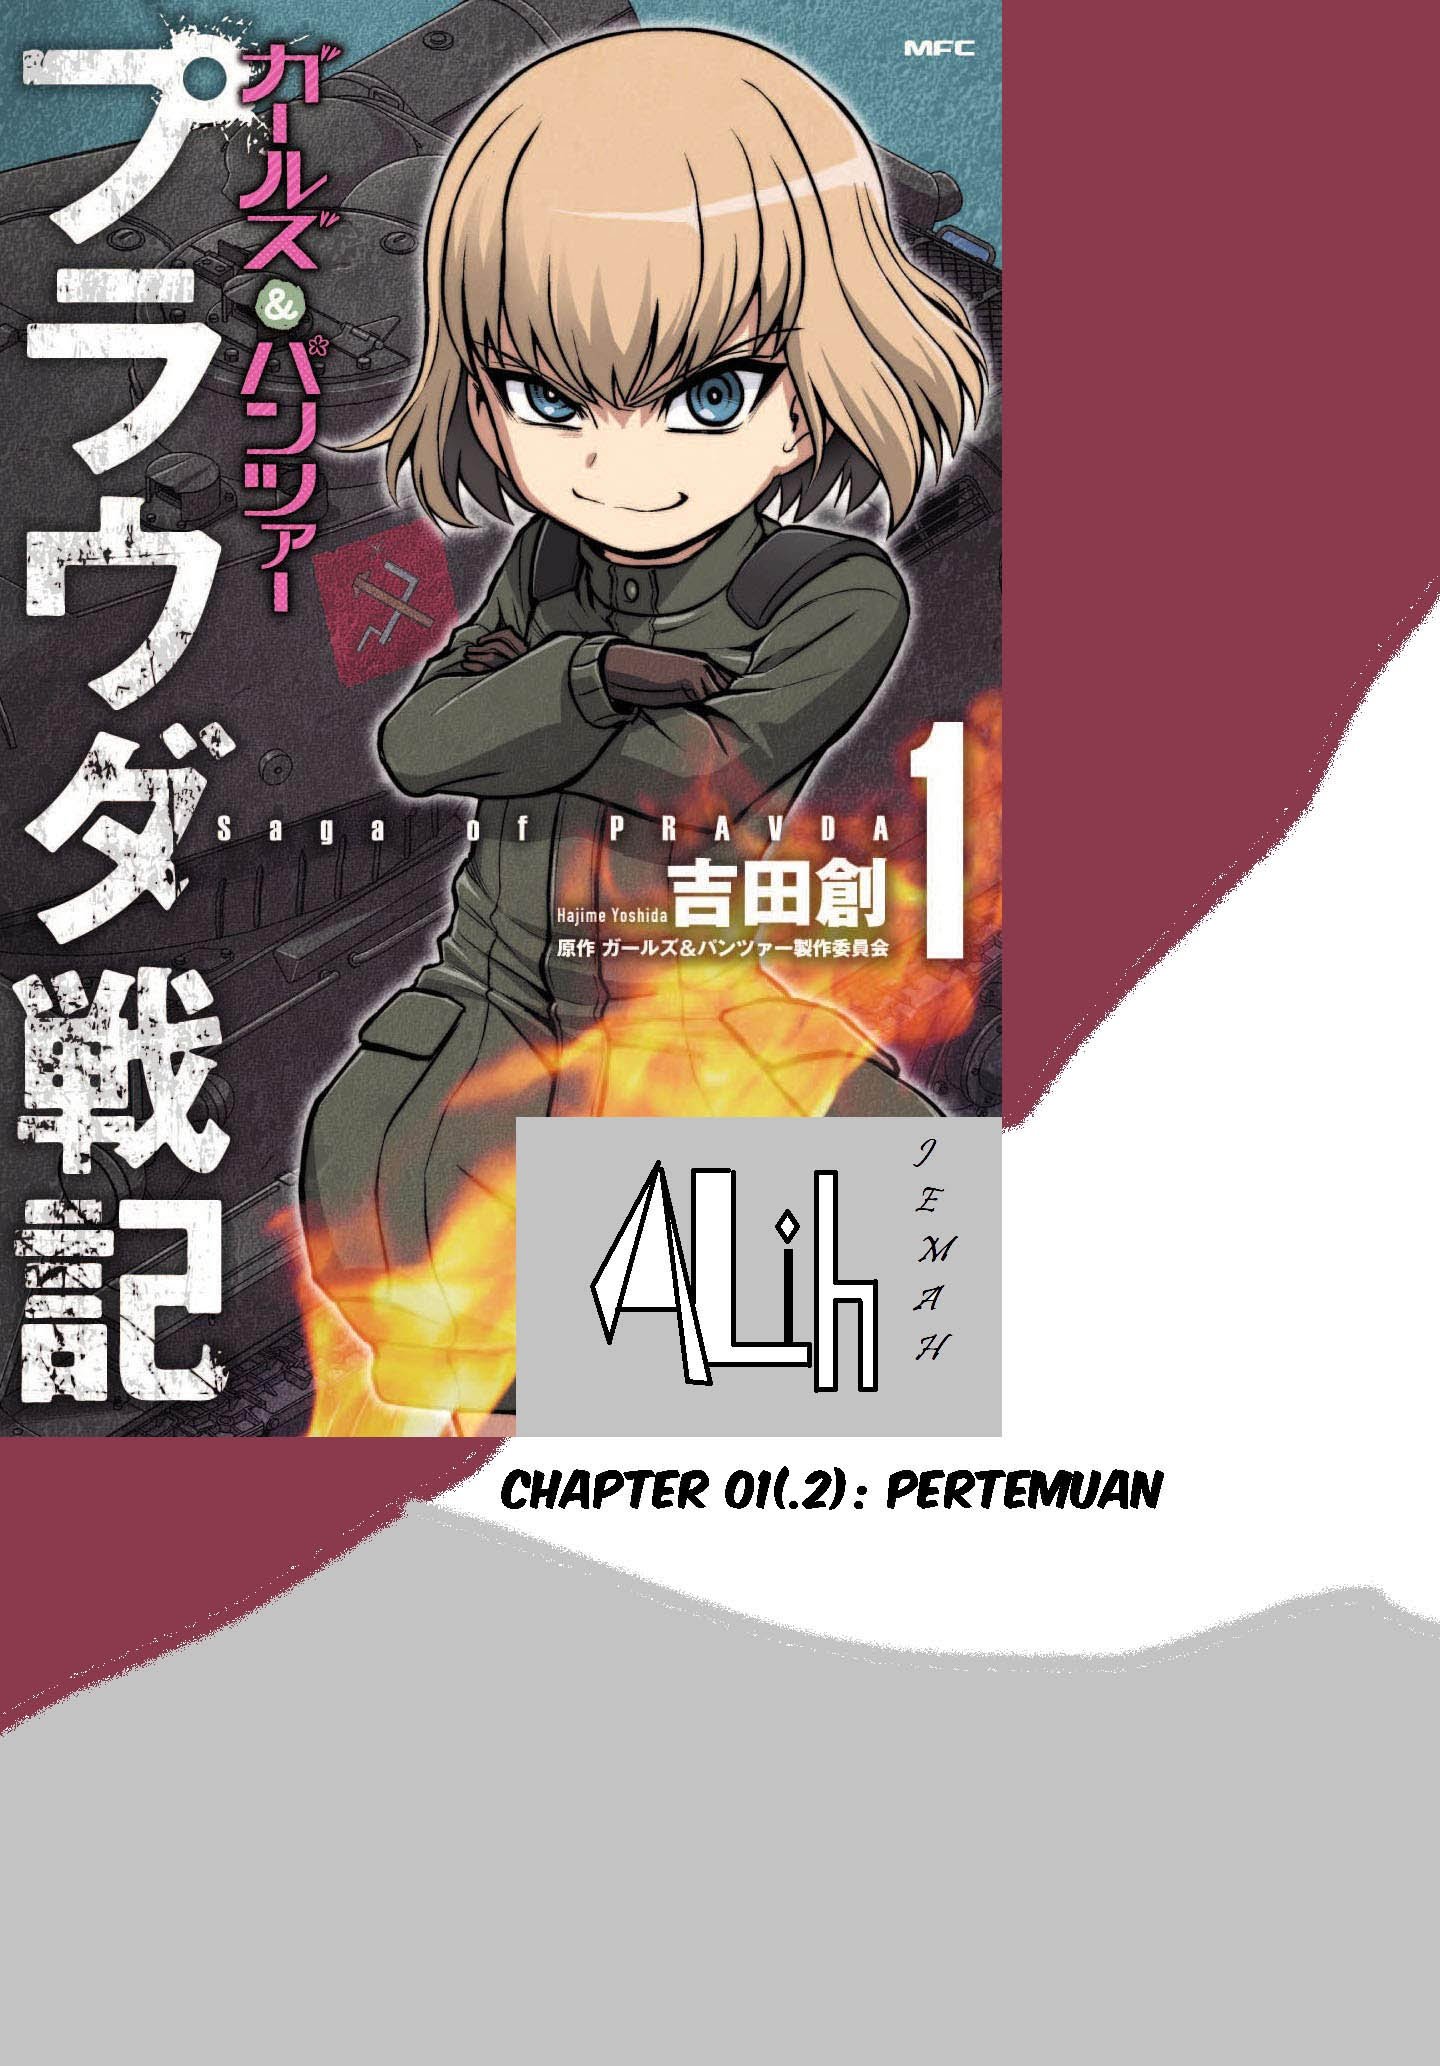 Girls und Panzer – Saga of Pravda Chapter 01.2